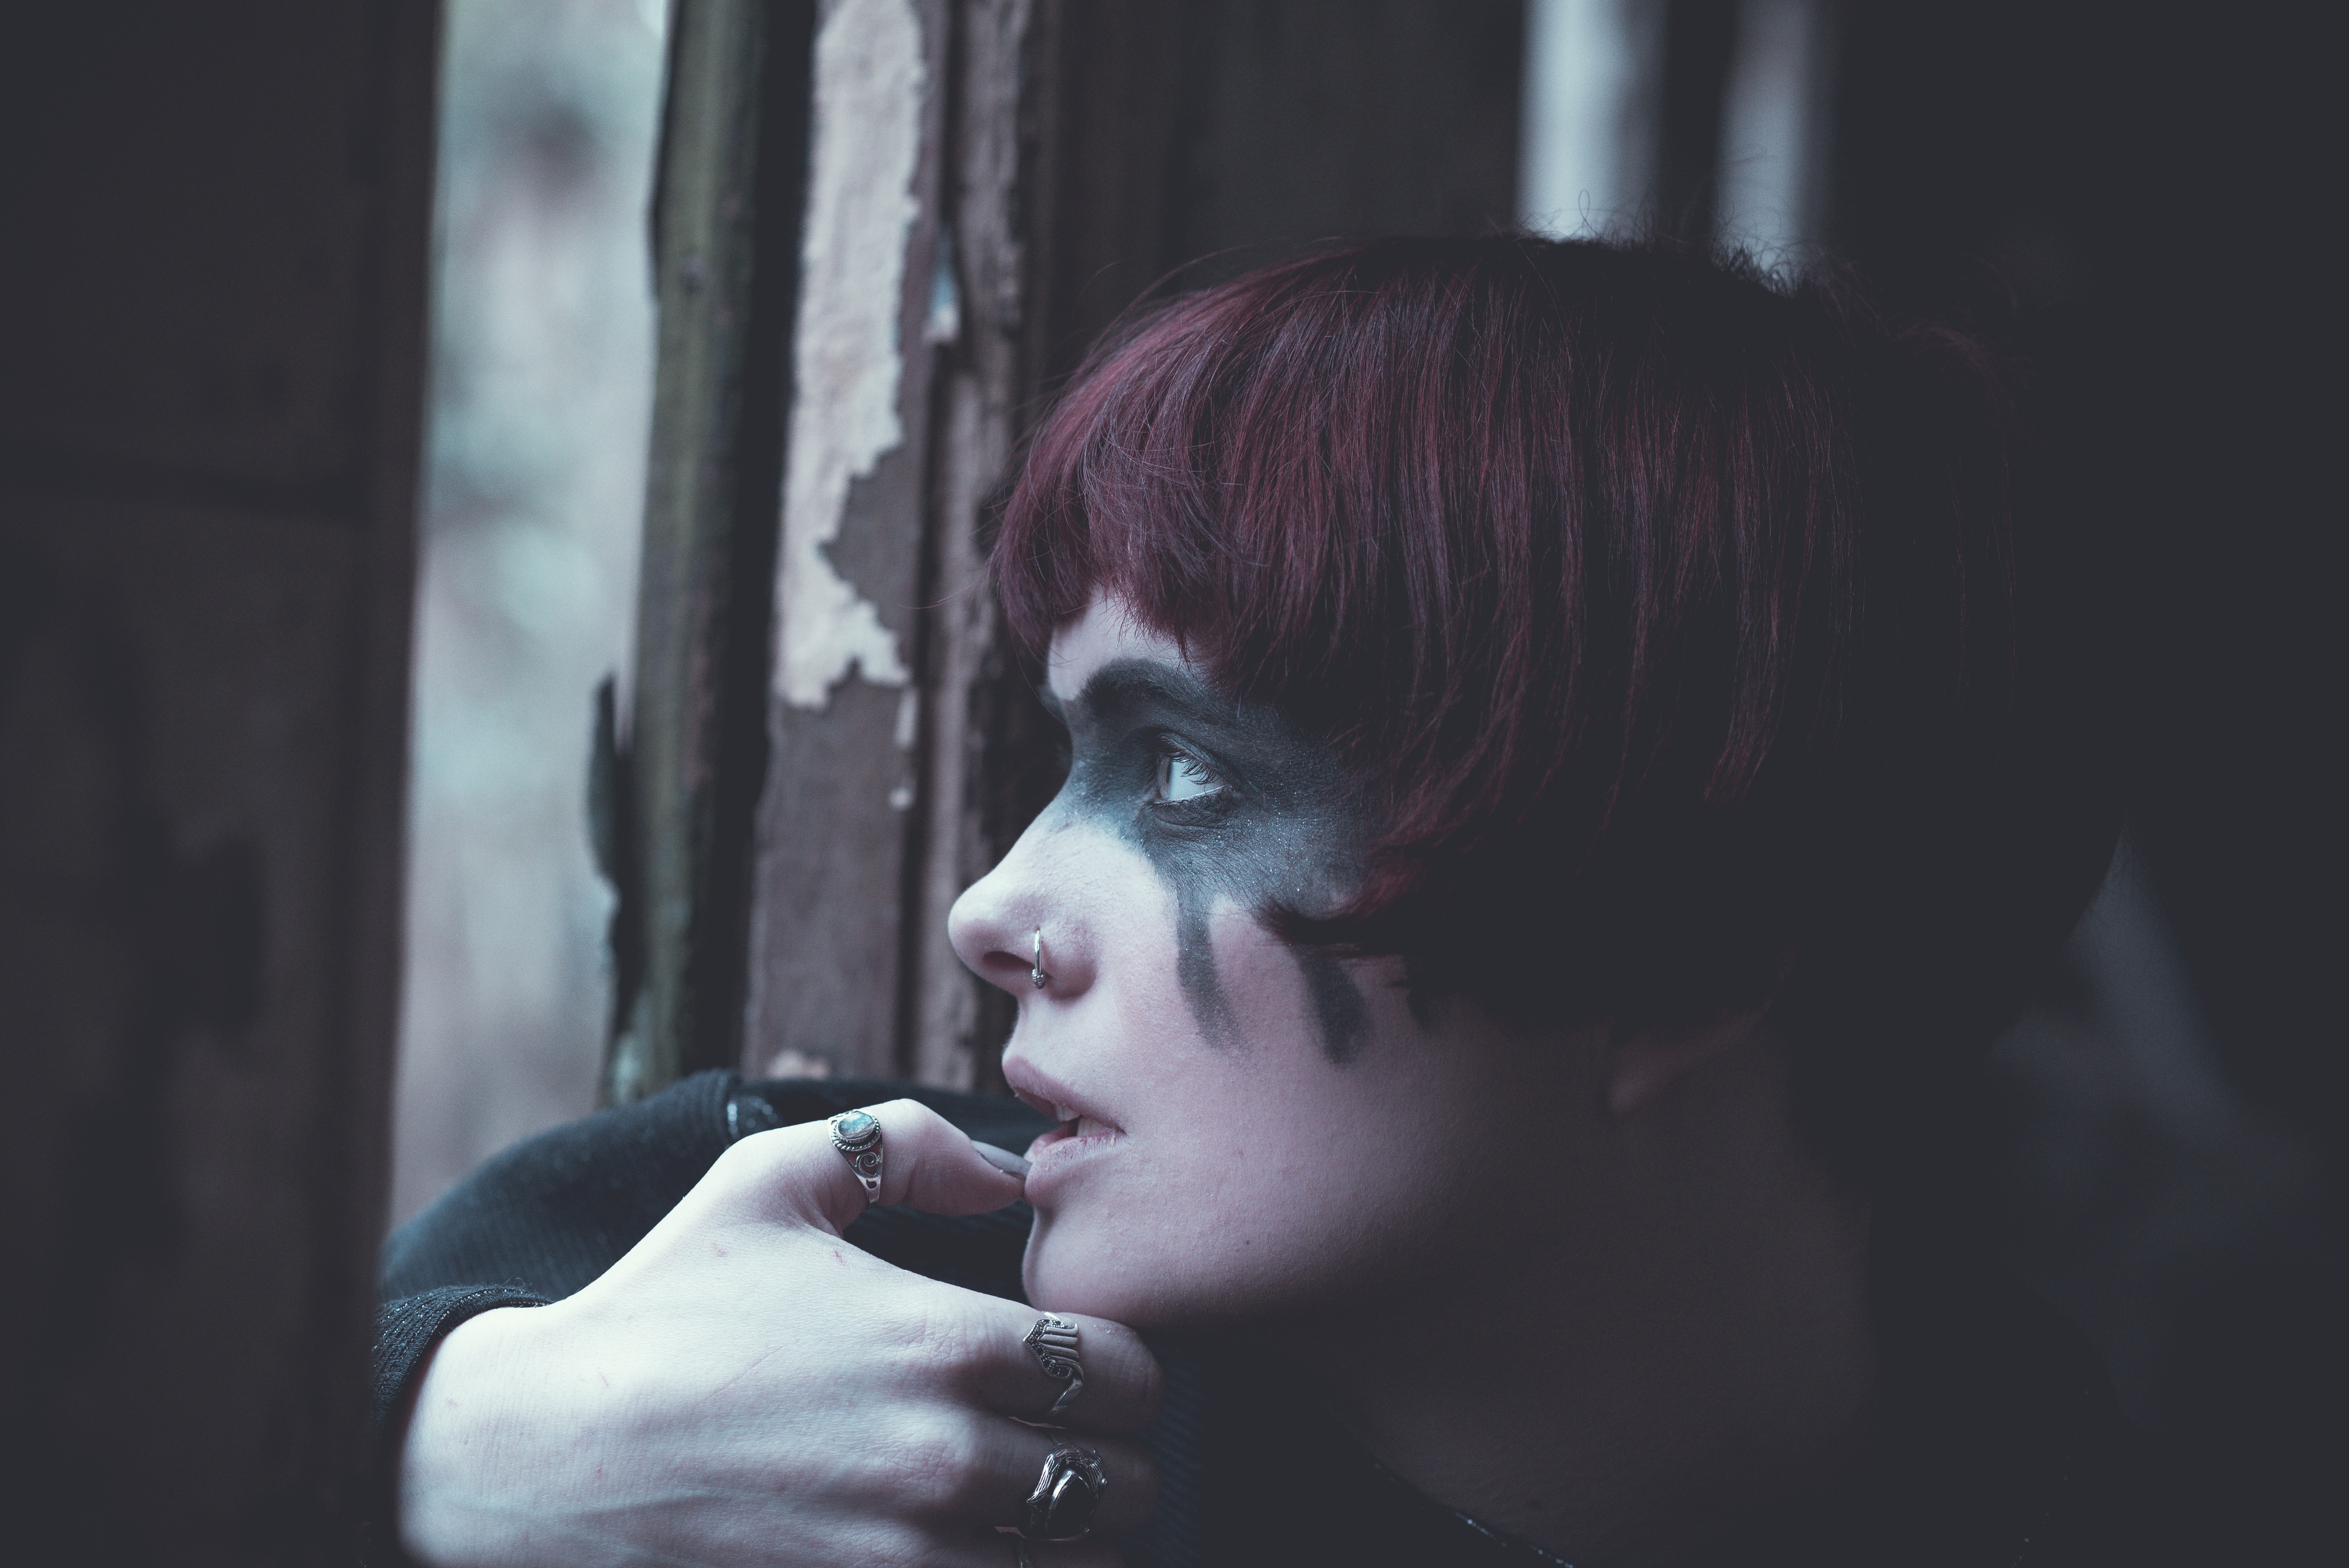 Foto de uma garota de cabelos curtos e ruivos, com uma maquiagem gótica pesada. Está sentada próxima a uma janela, de um local que parece ser um cemitério.